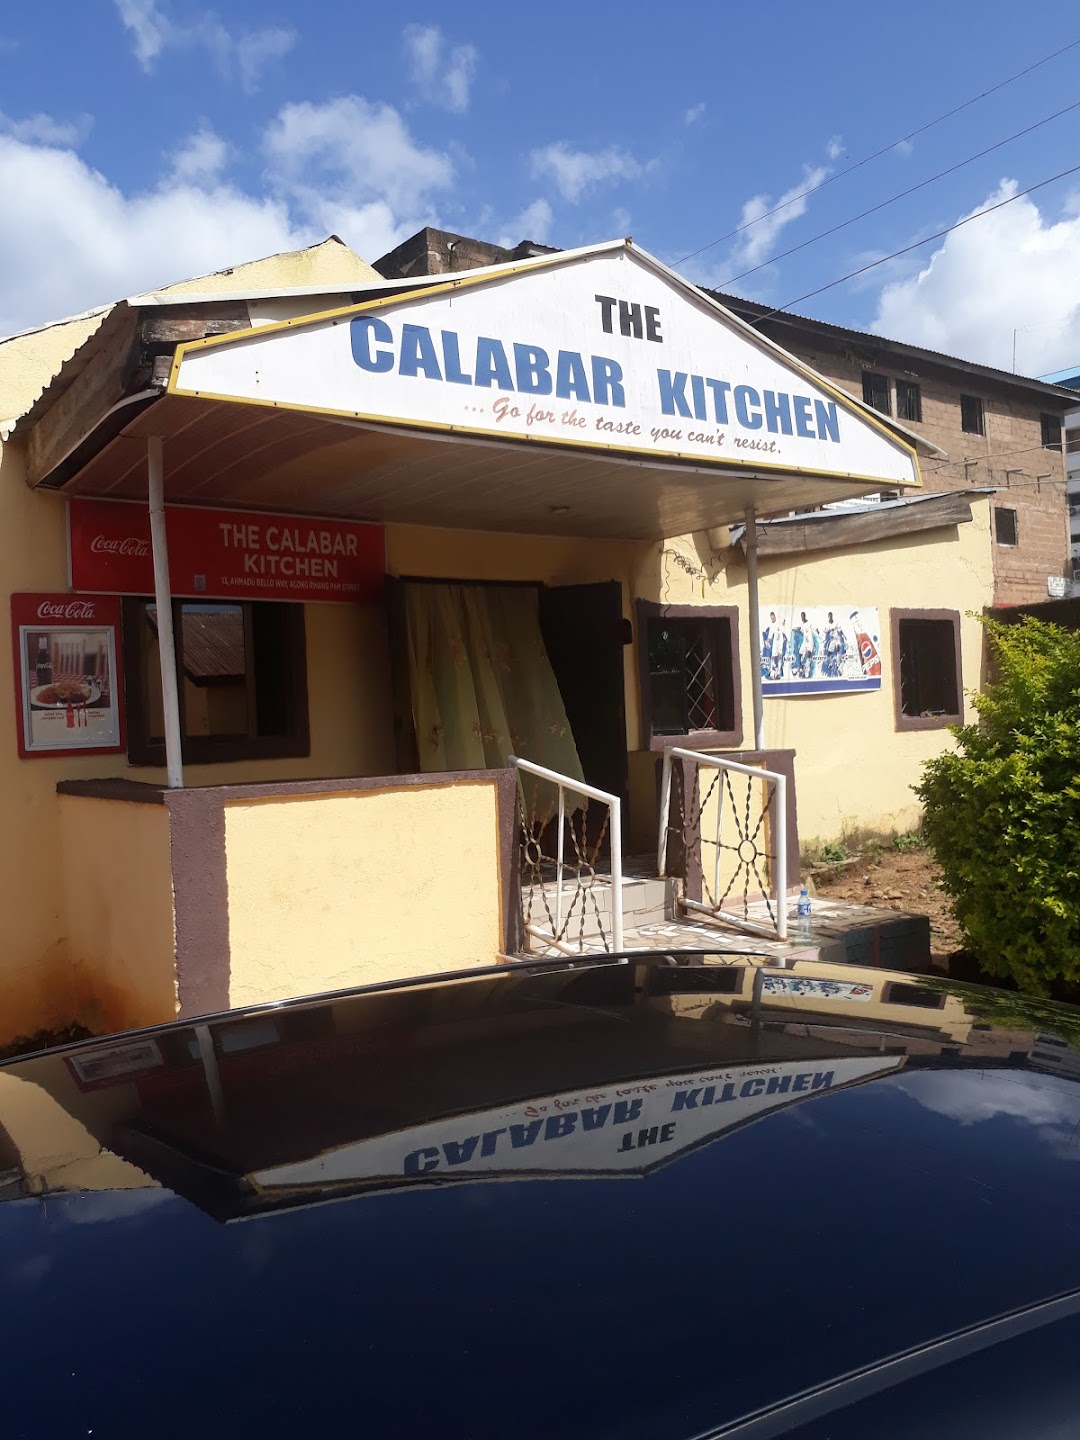 The Calabar Kitchen and Restaurant